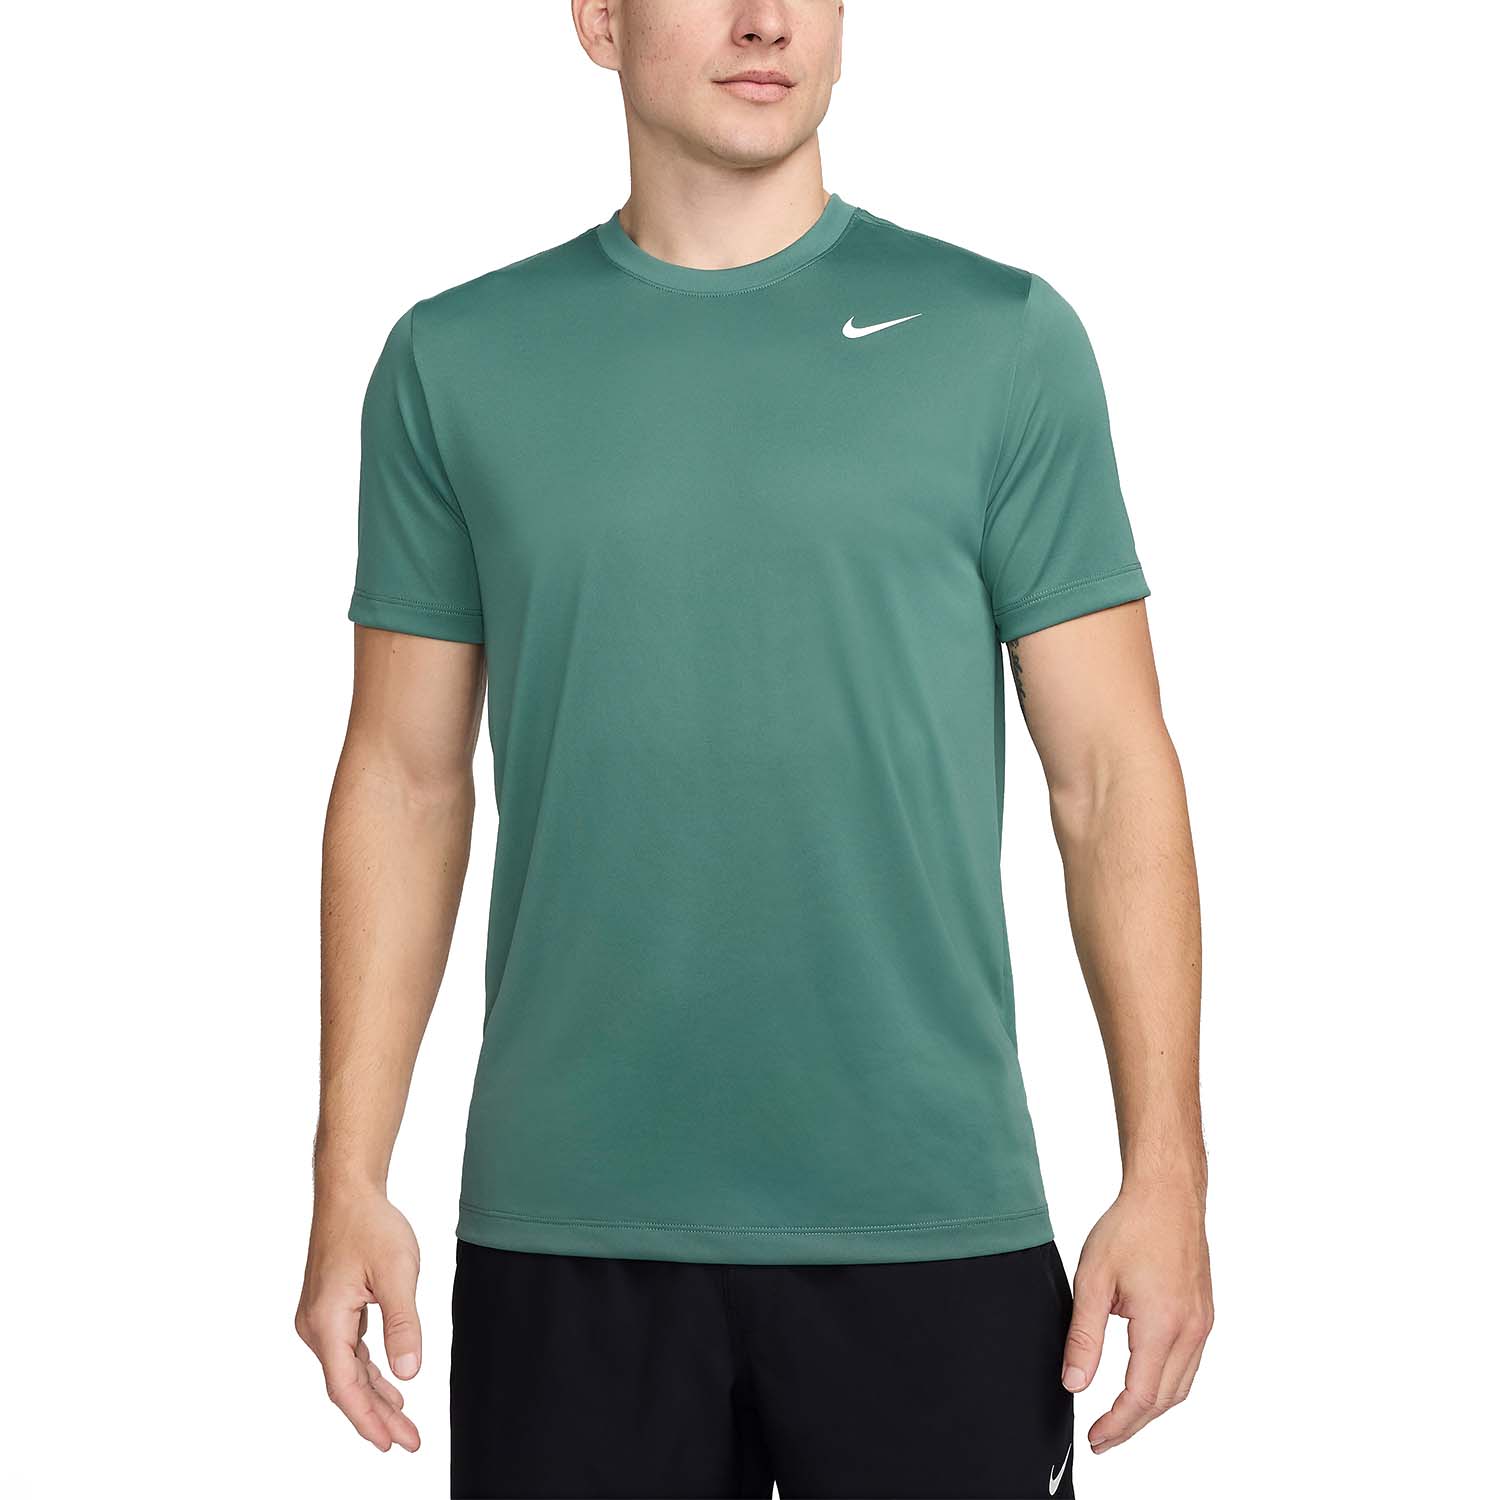 Nike Dri-FIT Legend Camiseta - Bicoastal/White